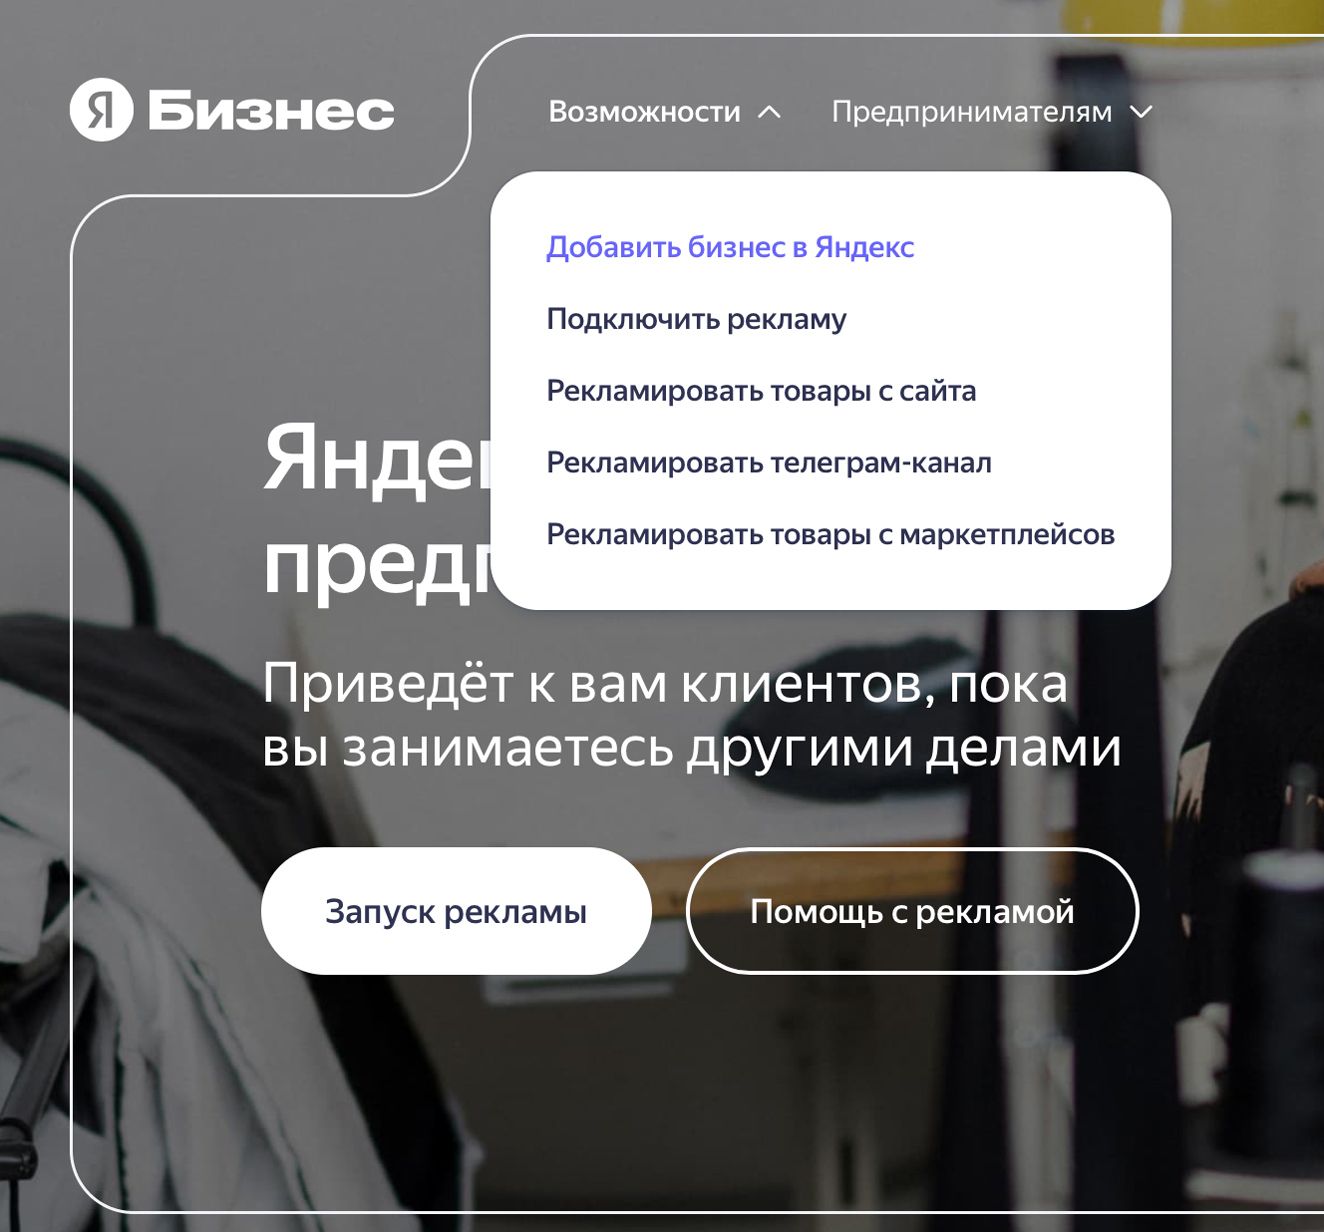 Добавление организации в Яндекс Бизнес